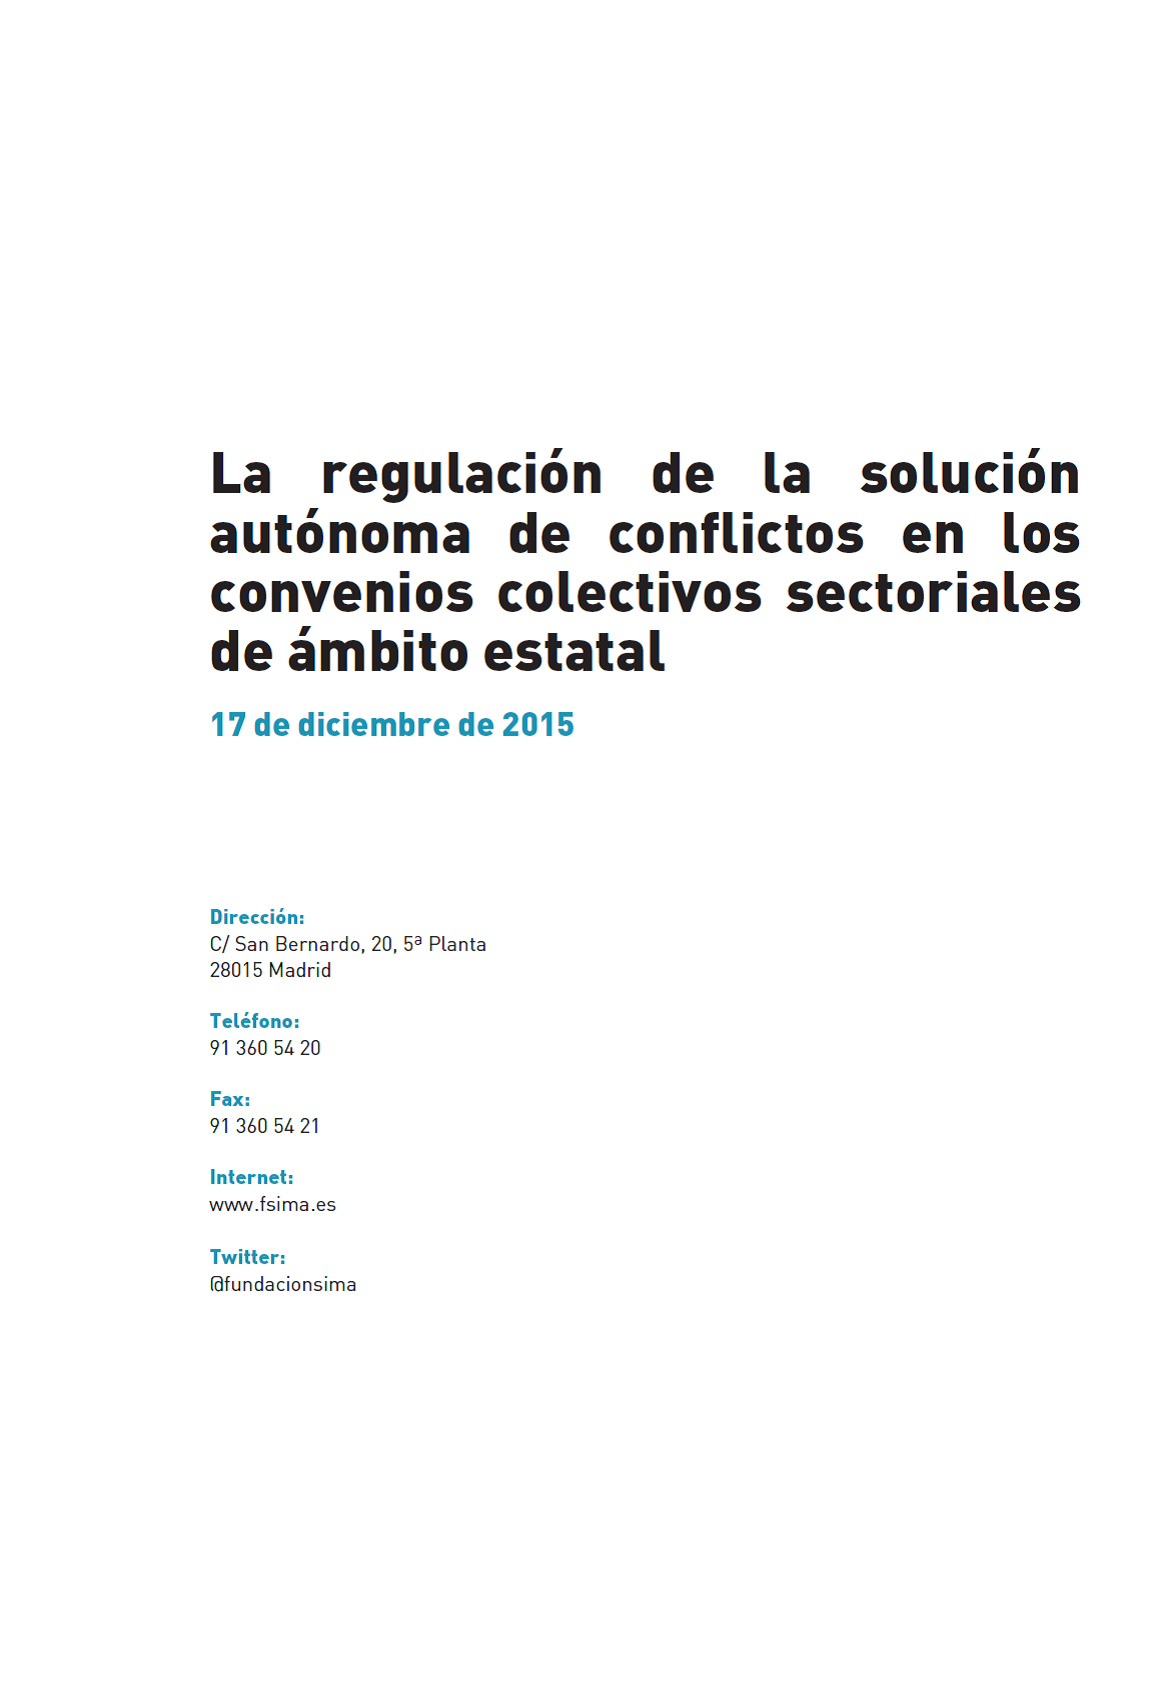 La regulación de la solución autónoma de conflictos en los convenios sectoriales estatales